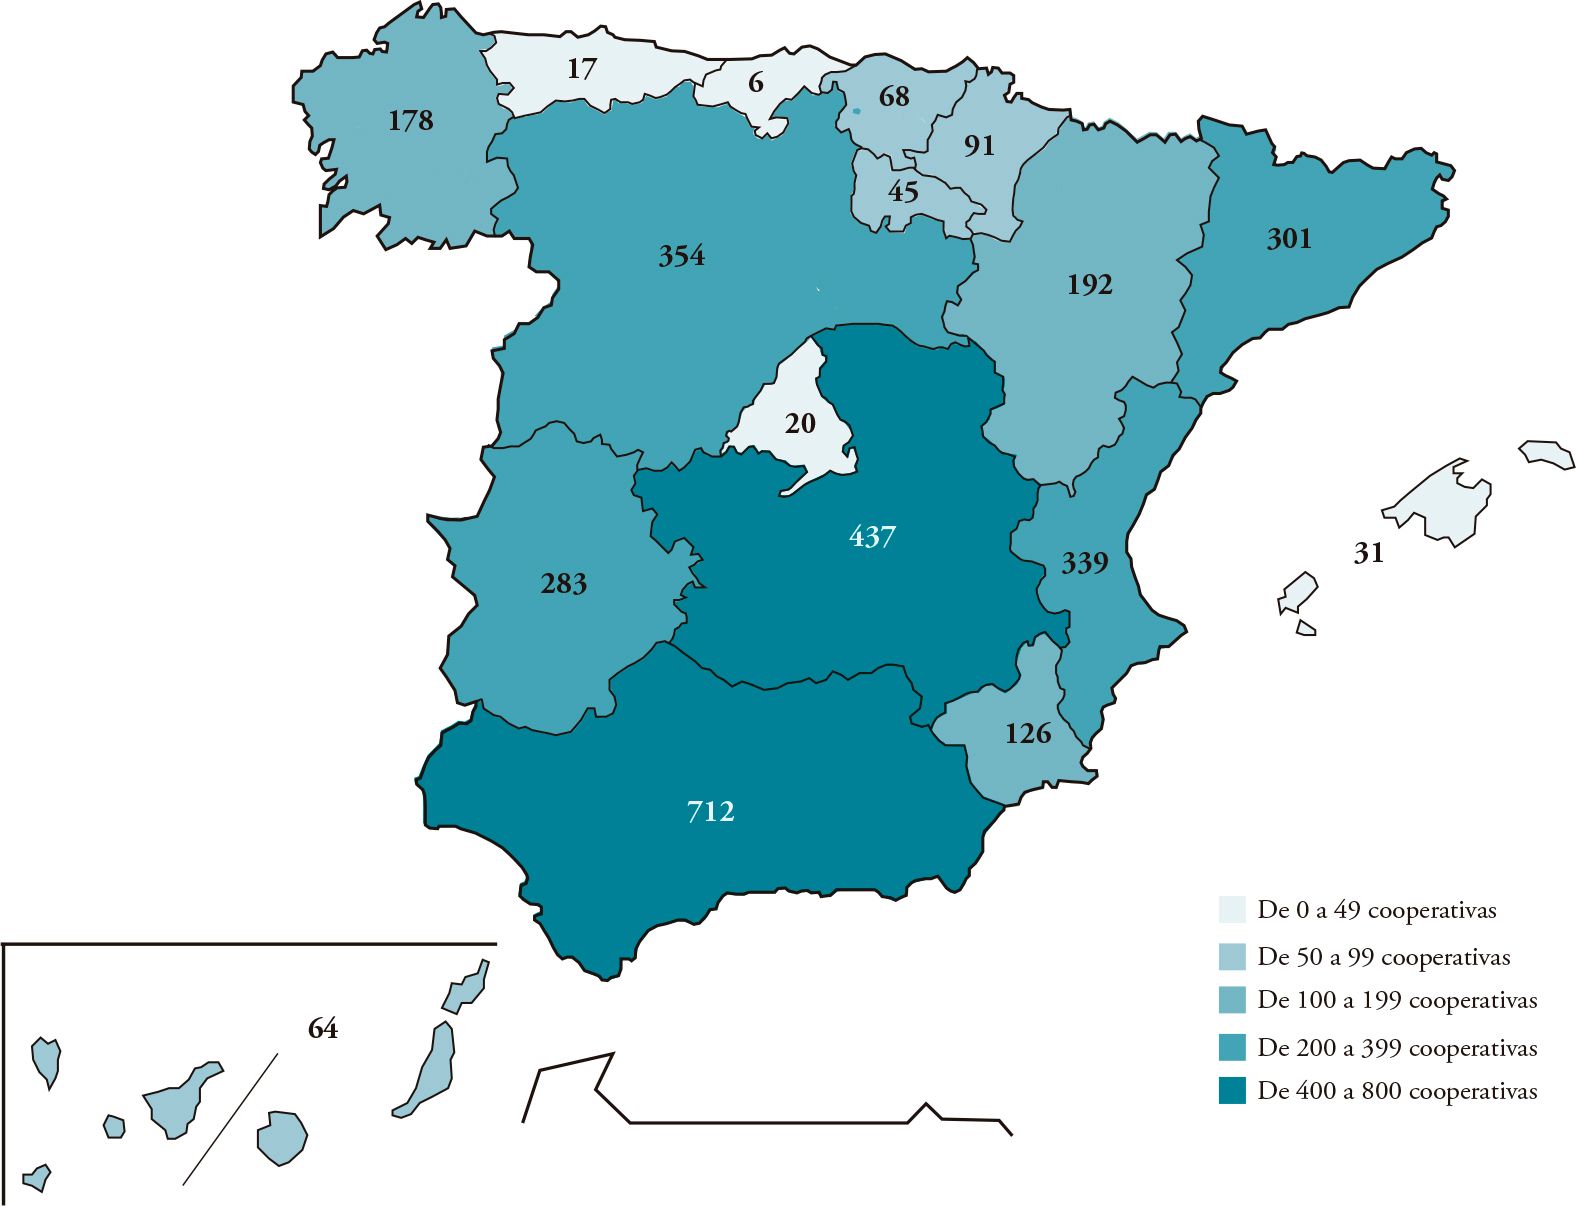 Mapa de España con Representación de las regiones más cooperativizadas, Andalucía seguida de Castilla la Mancha